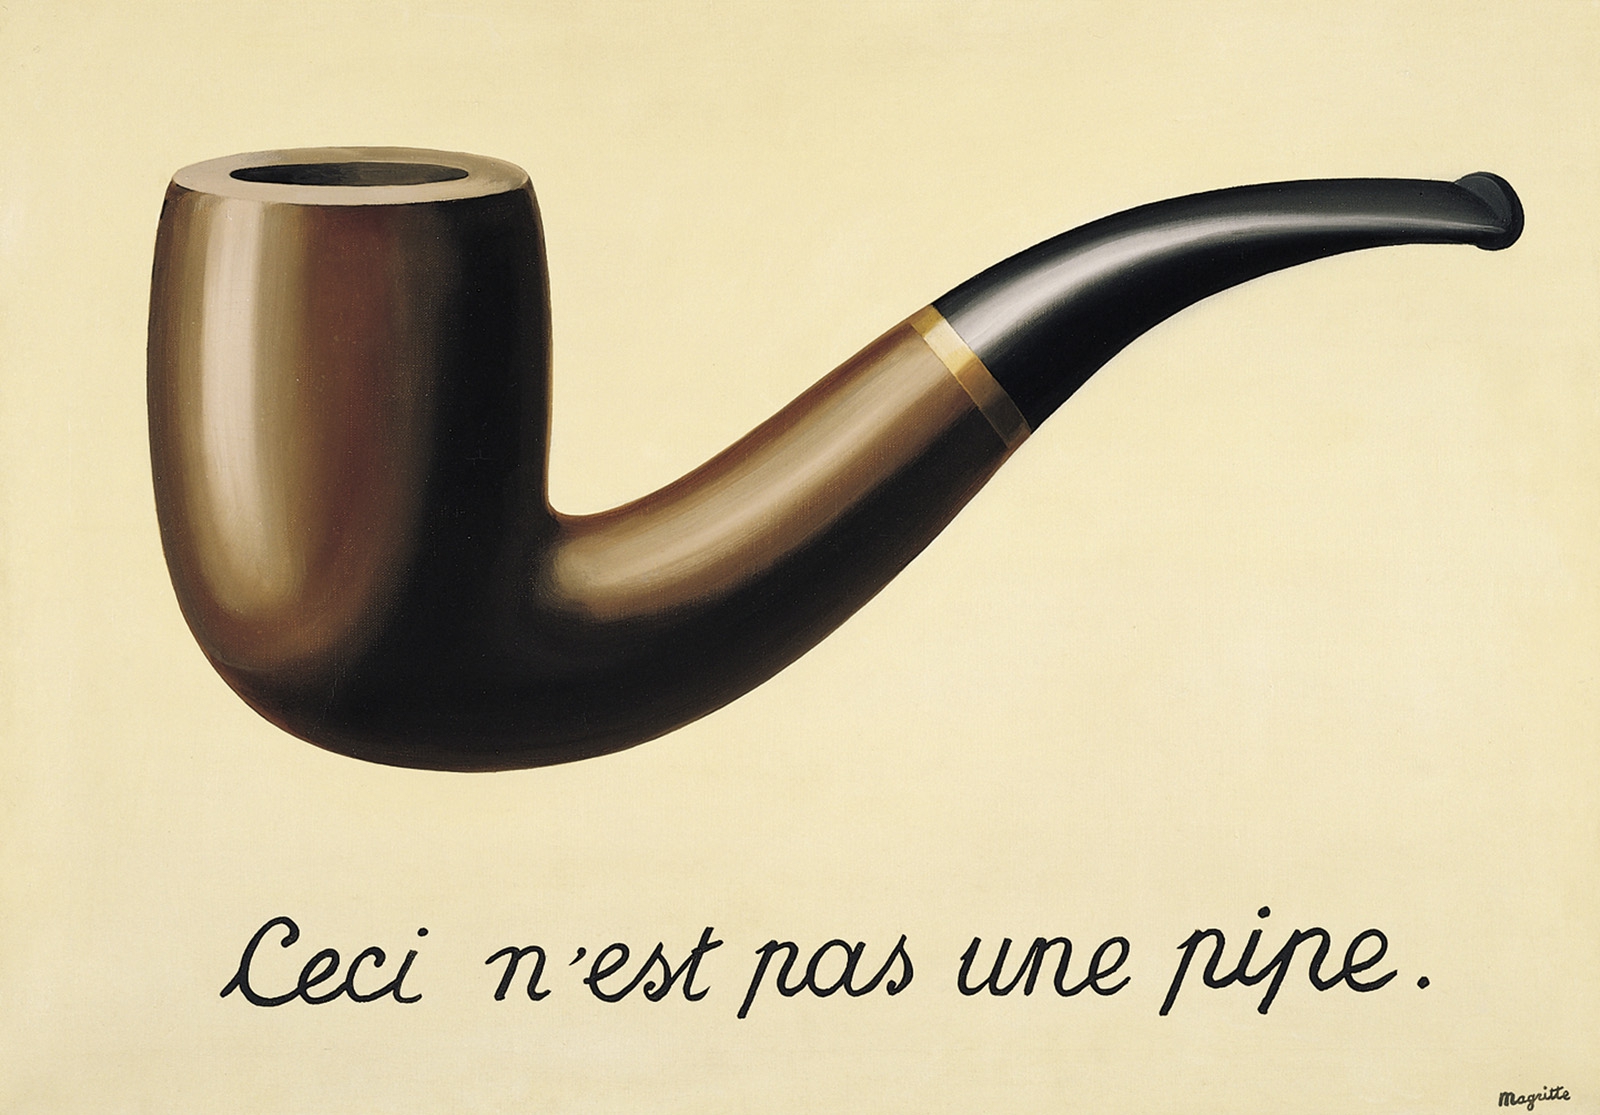 Rene Magritte, "To nie jest fajka", 1929